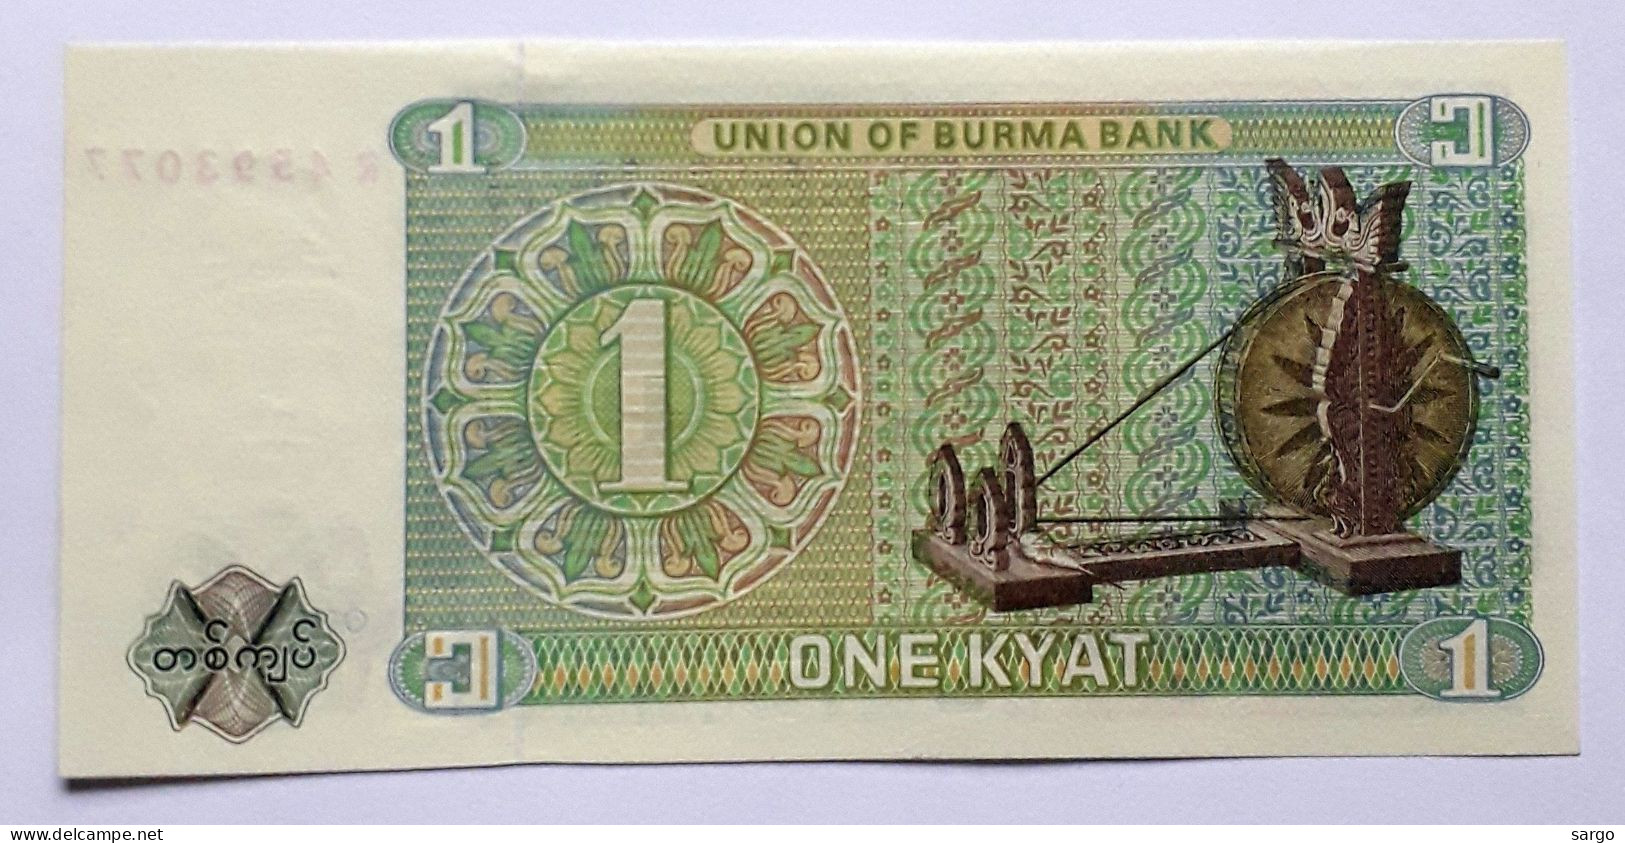 BURMA - BIRMANIA - MYANMAR - 1 KYAT - P 56 (1972) - UNC - BANKNOTES - PAPER MONEY - CARTAMONETA - - Myanmar